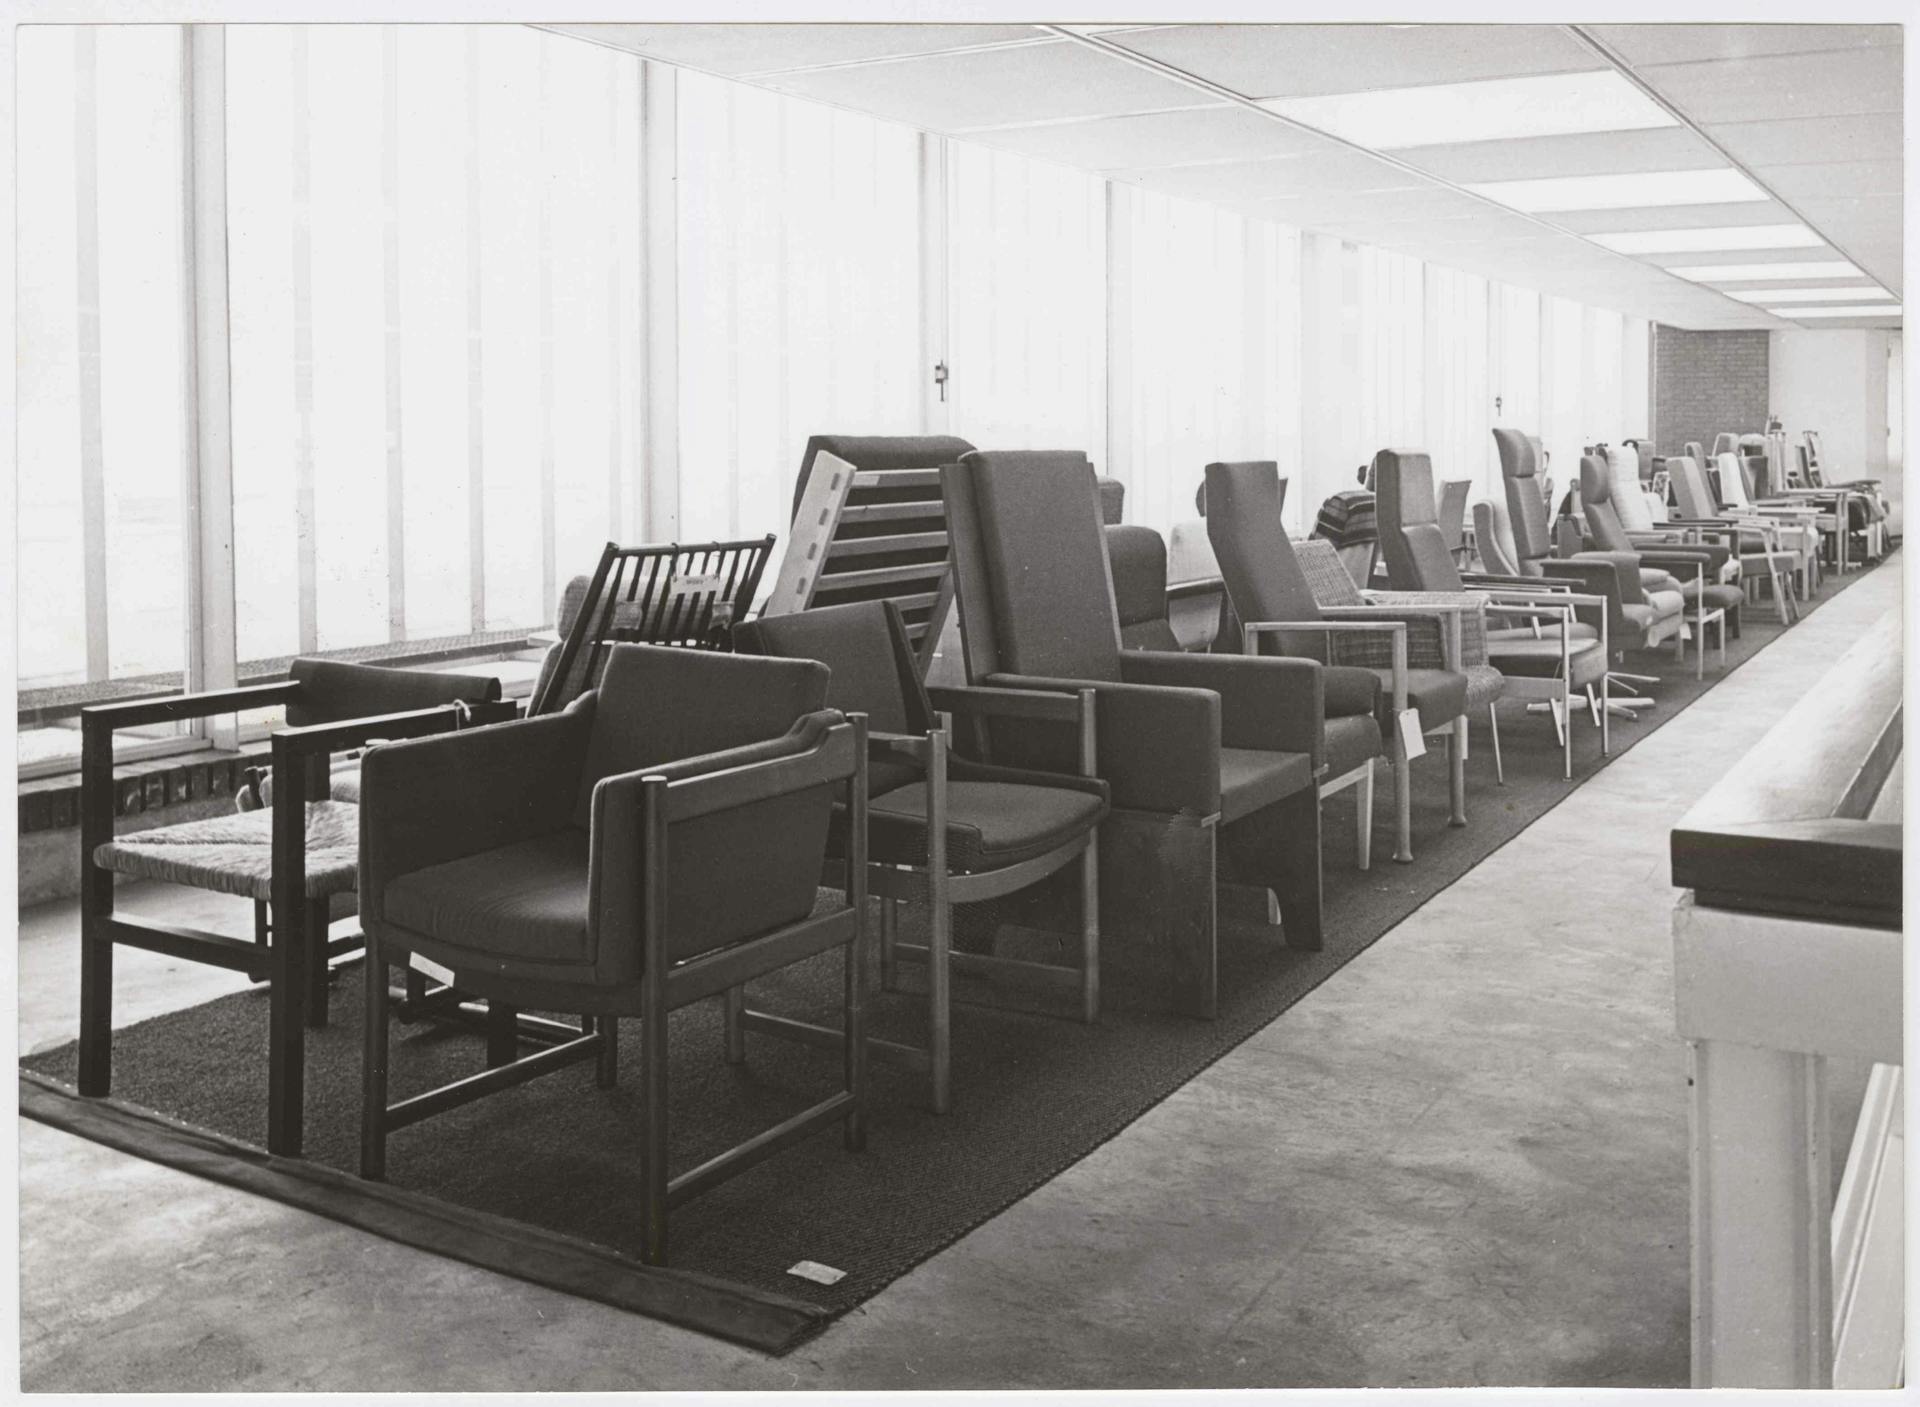  Presentatie ingezonden stoelen voor de Nationale Prijsvraag Bejaardenstoel, 1968. Opdrachtgever: Centrale Bond van Meubelfabrikanten. Foto: Fotodienst Schipper. Collectie Het Nieuwe Instituut, ODEE f52